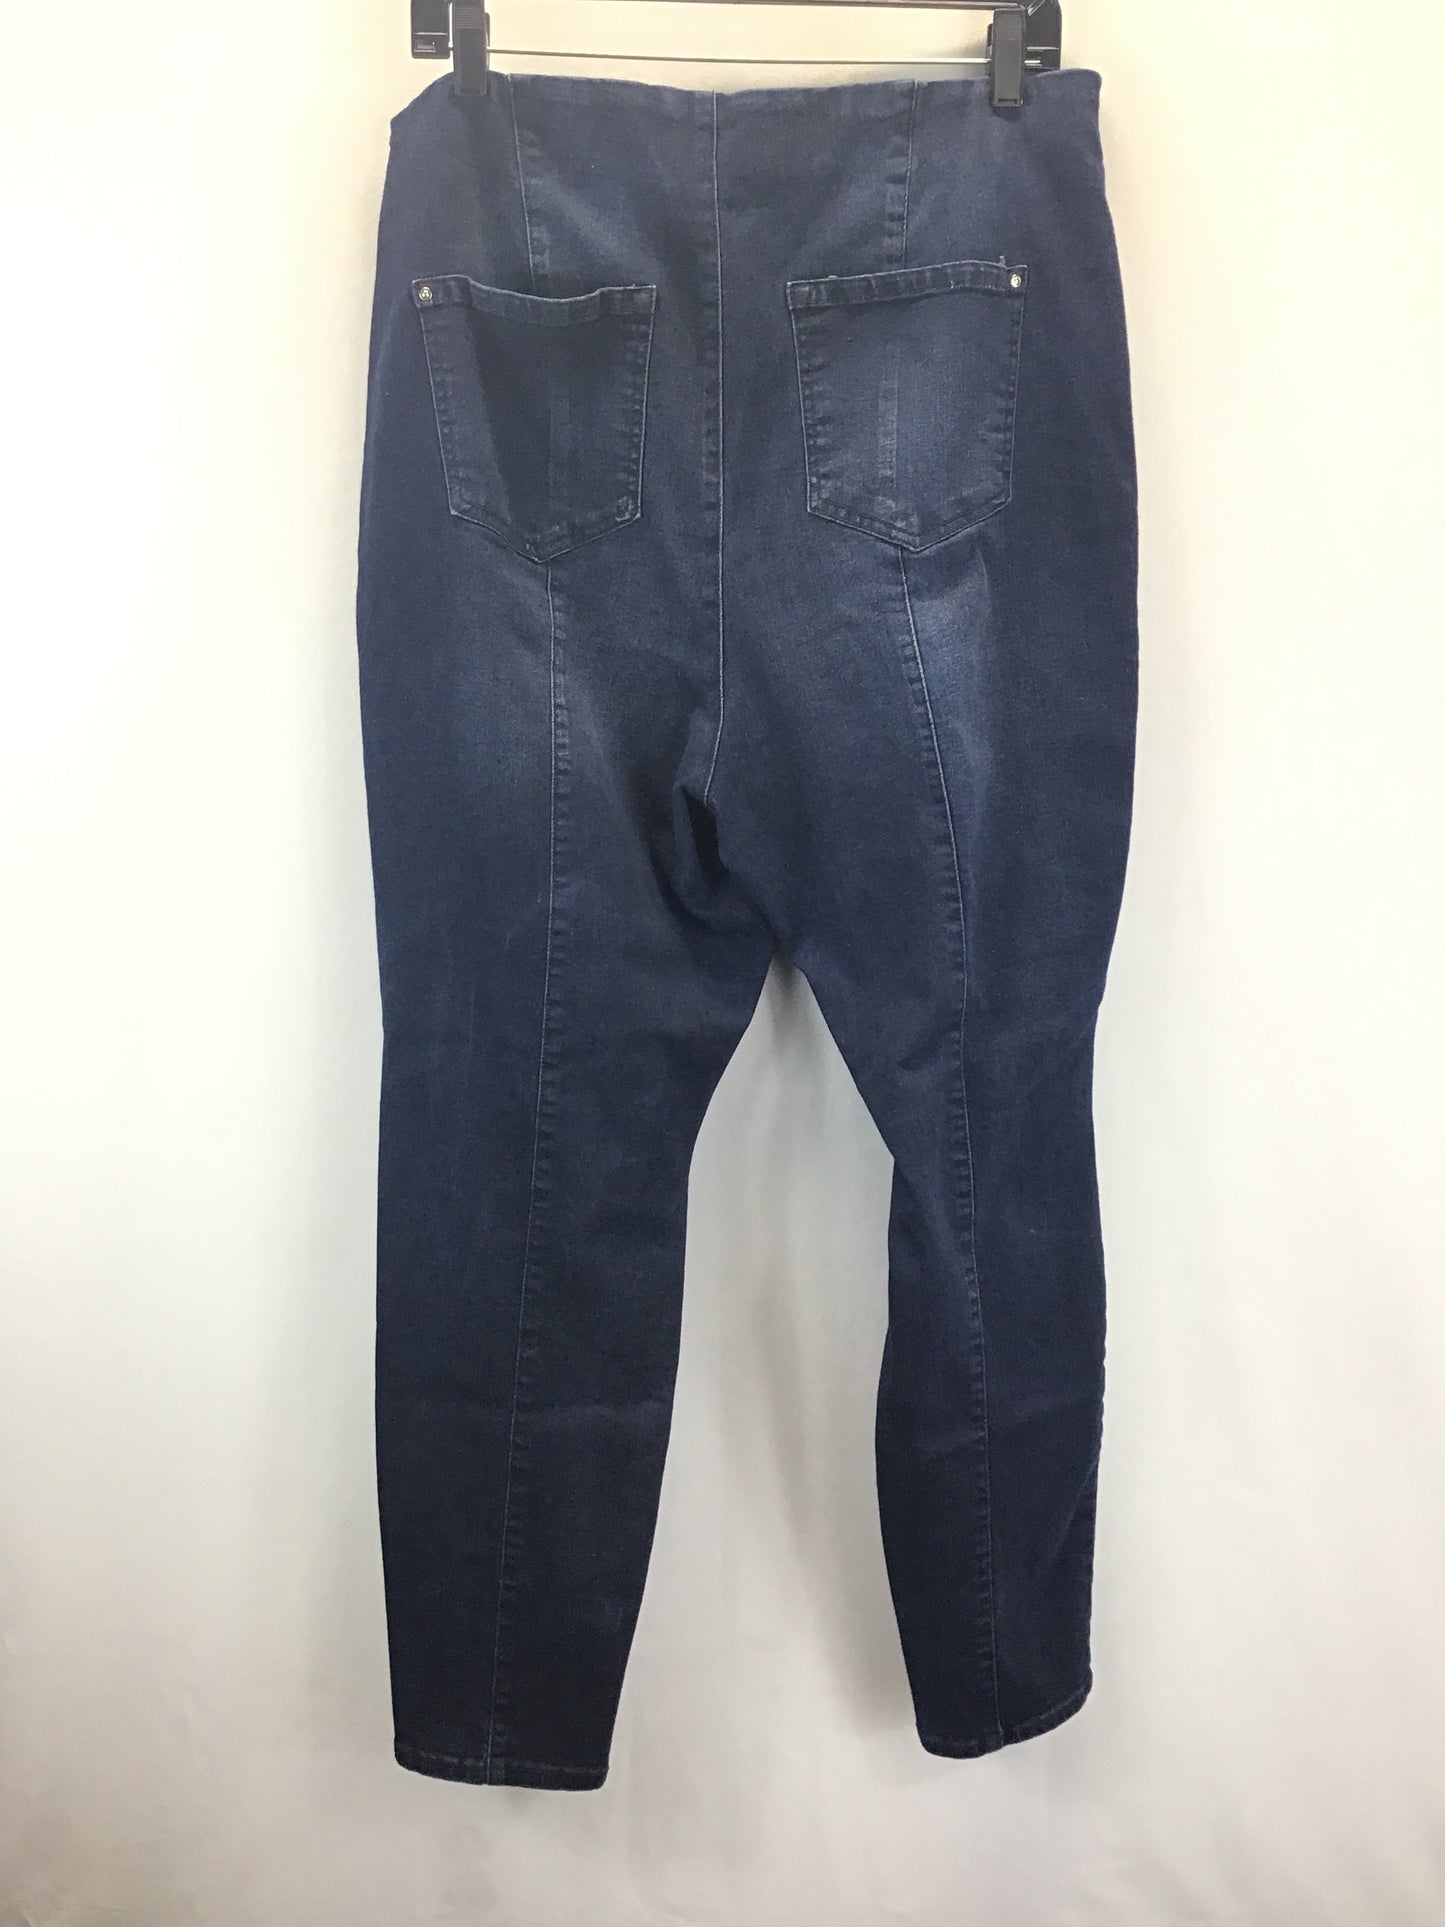 Blue Denim Jeans Skinny Inc, Size 16w